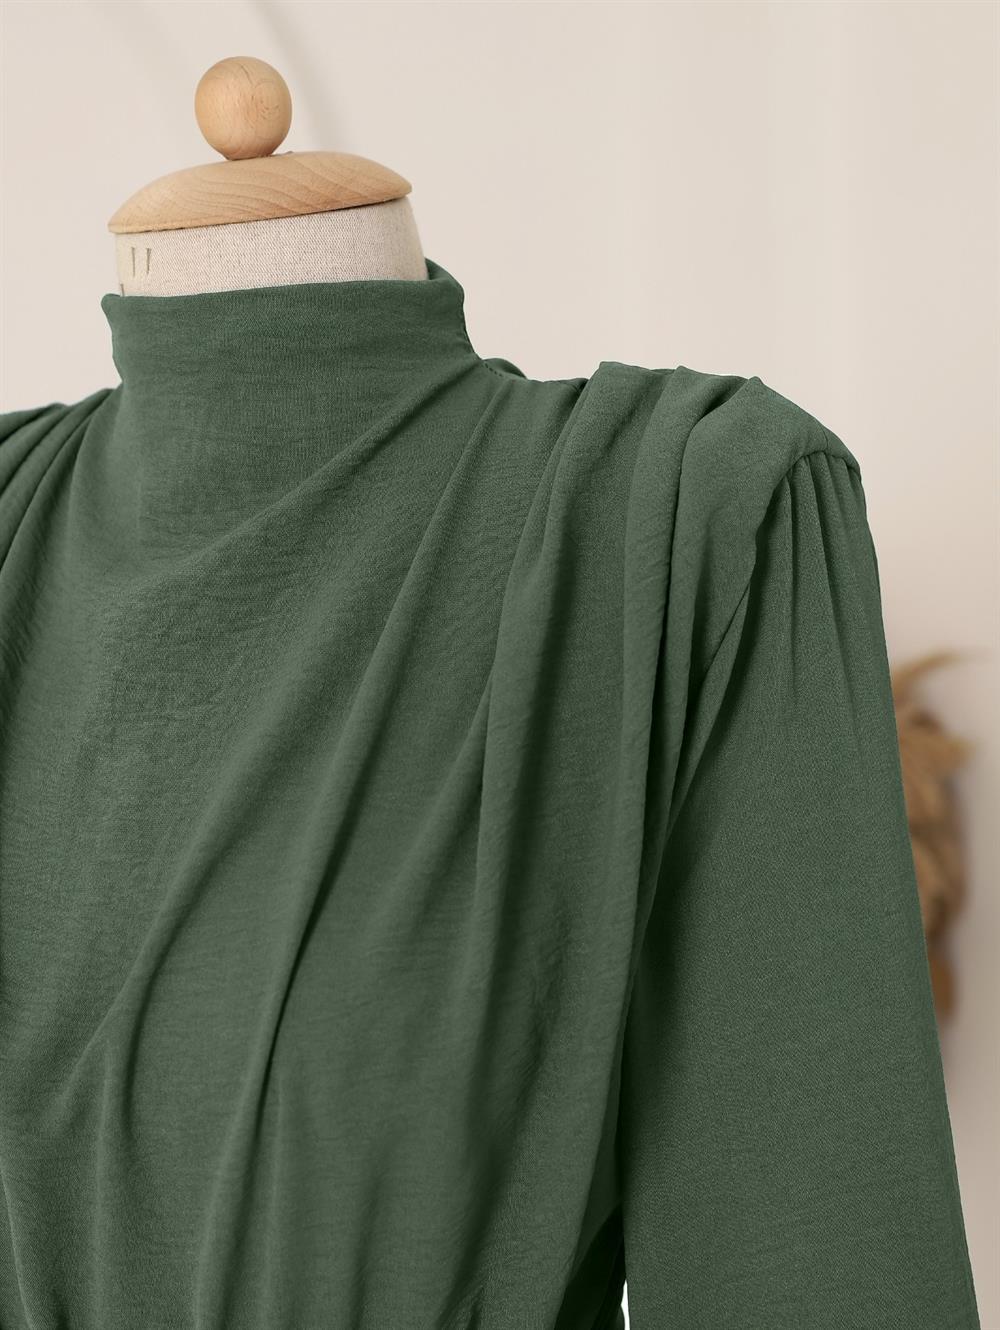 Skirt Detailed Vatkalı Ayrobin Overalls  -Green